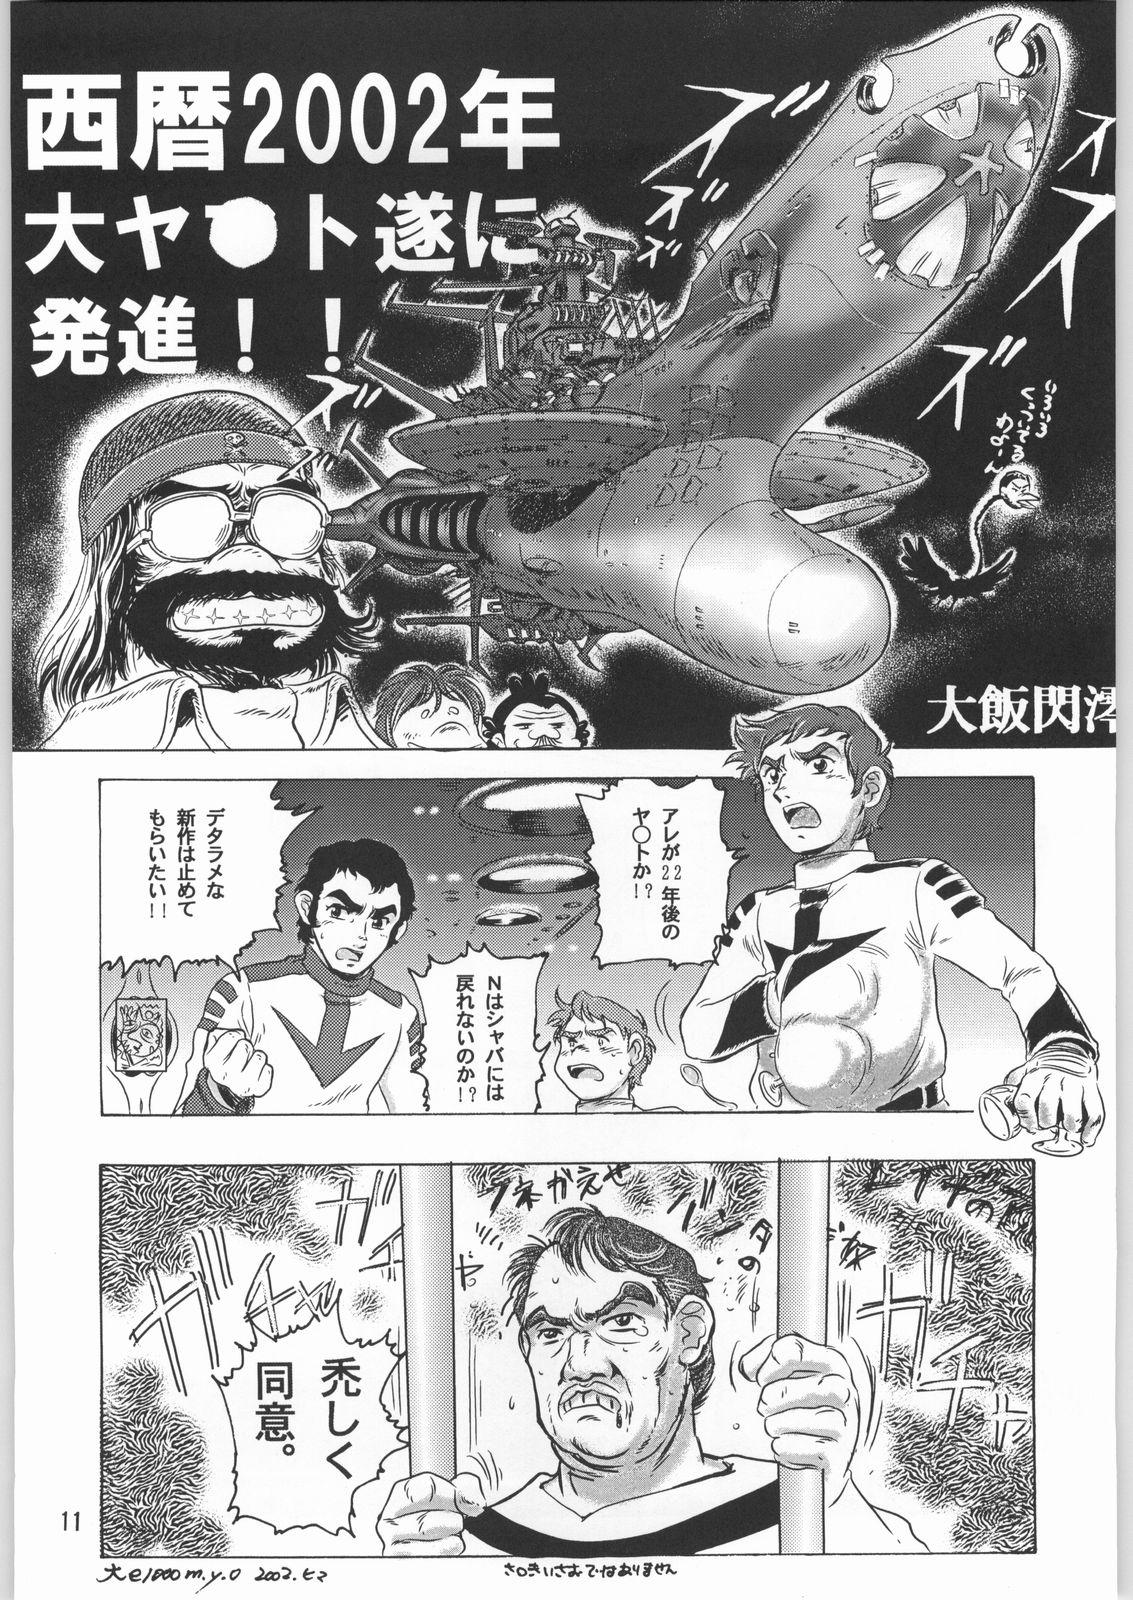 Dominicana Megaton Punch 1 - Space battleship yamato Chobits Muscles - Page 10